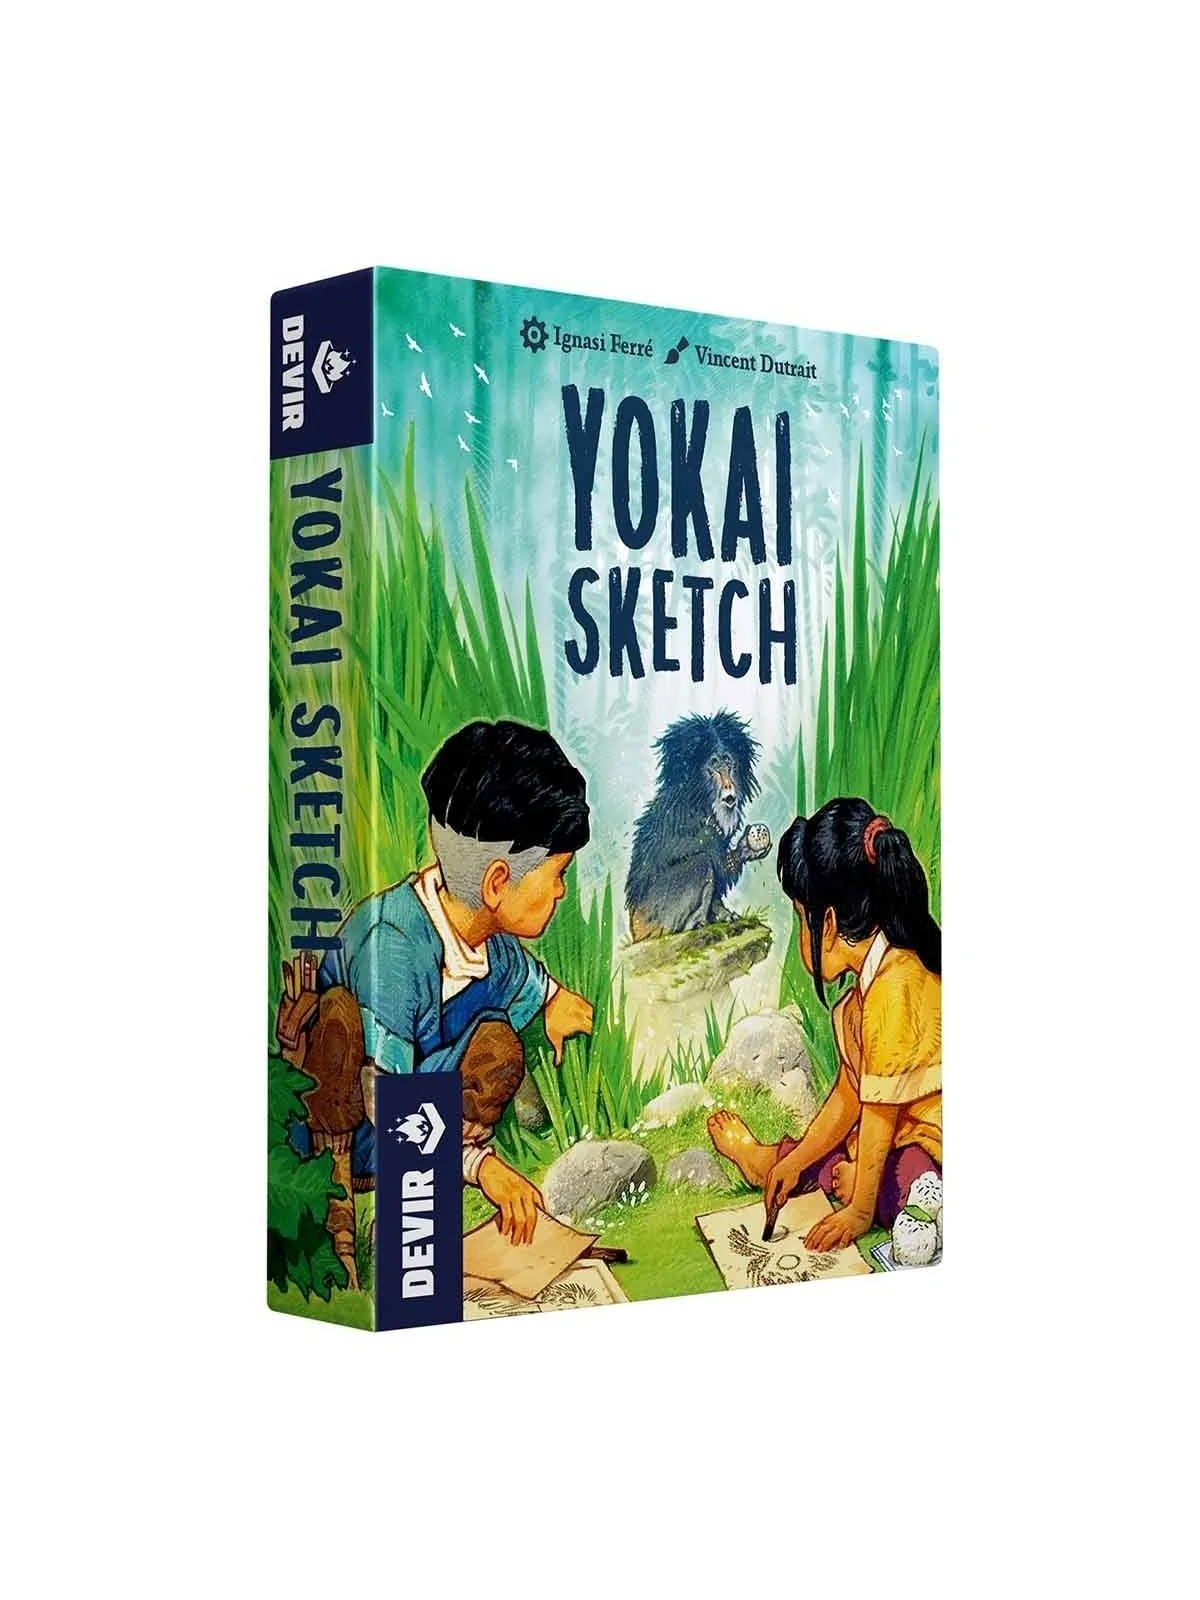 Comprar Juego cartas devir yokai sketch barato al mejor precio 8,49 € 